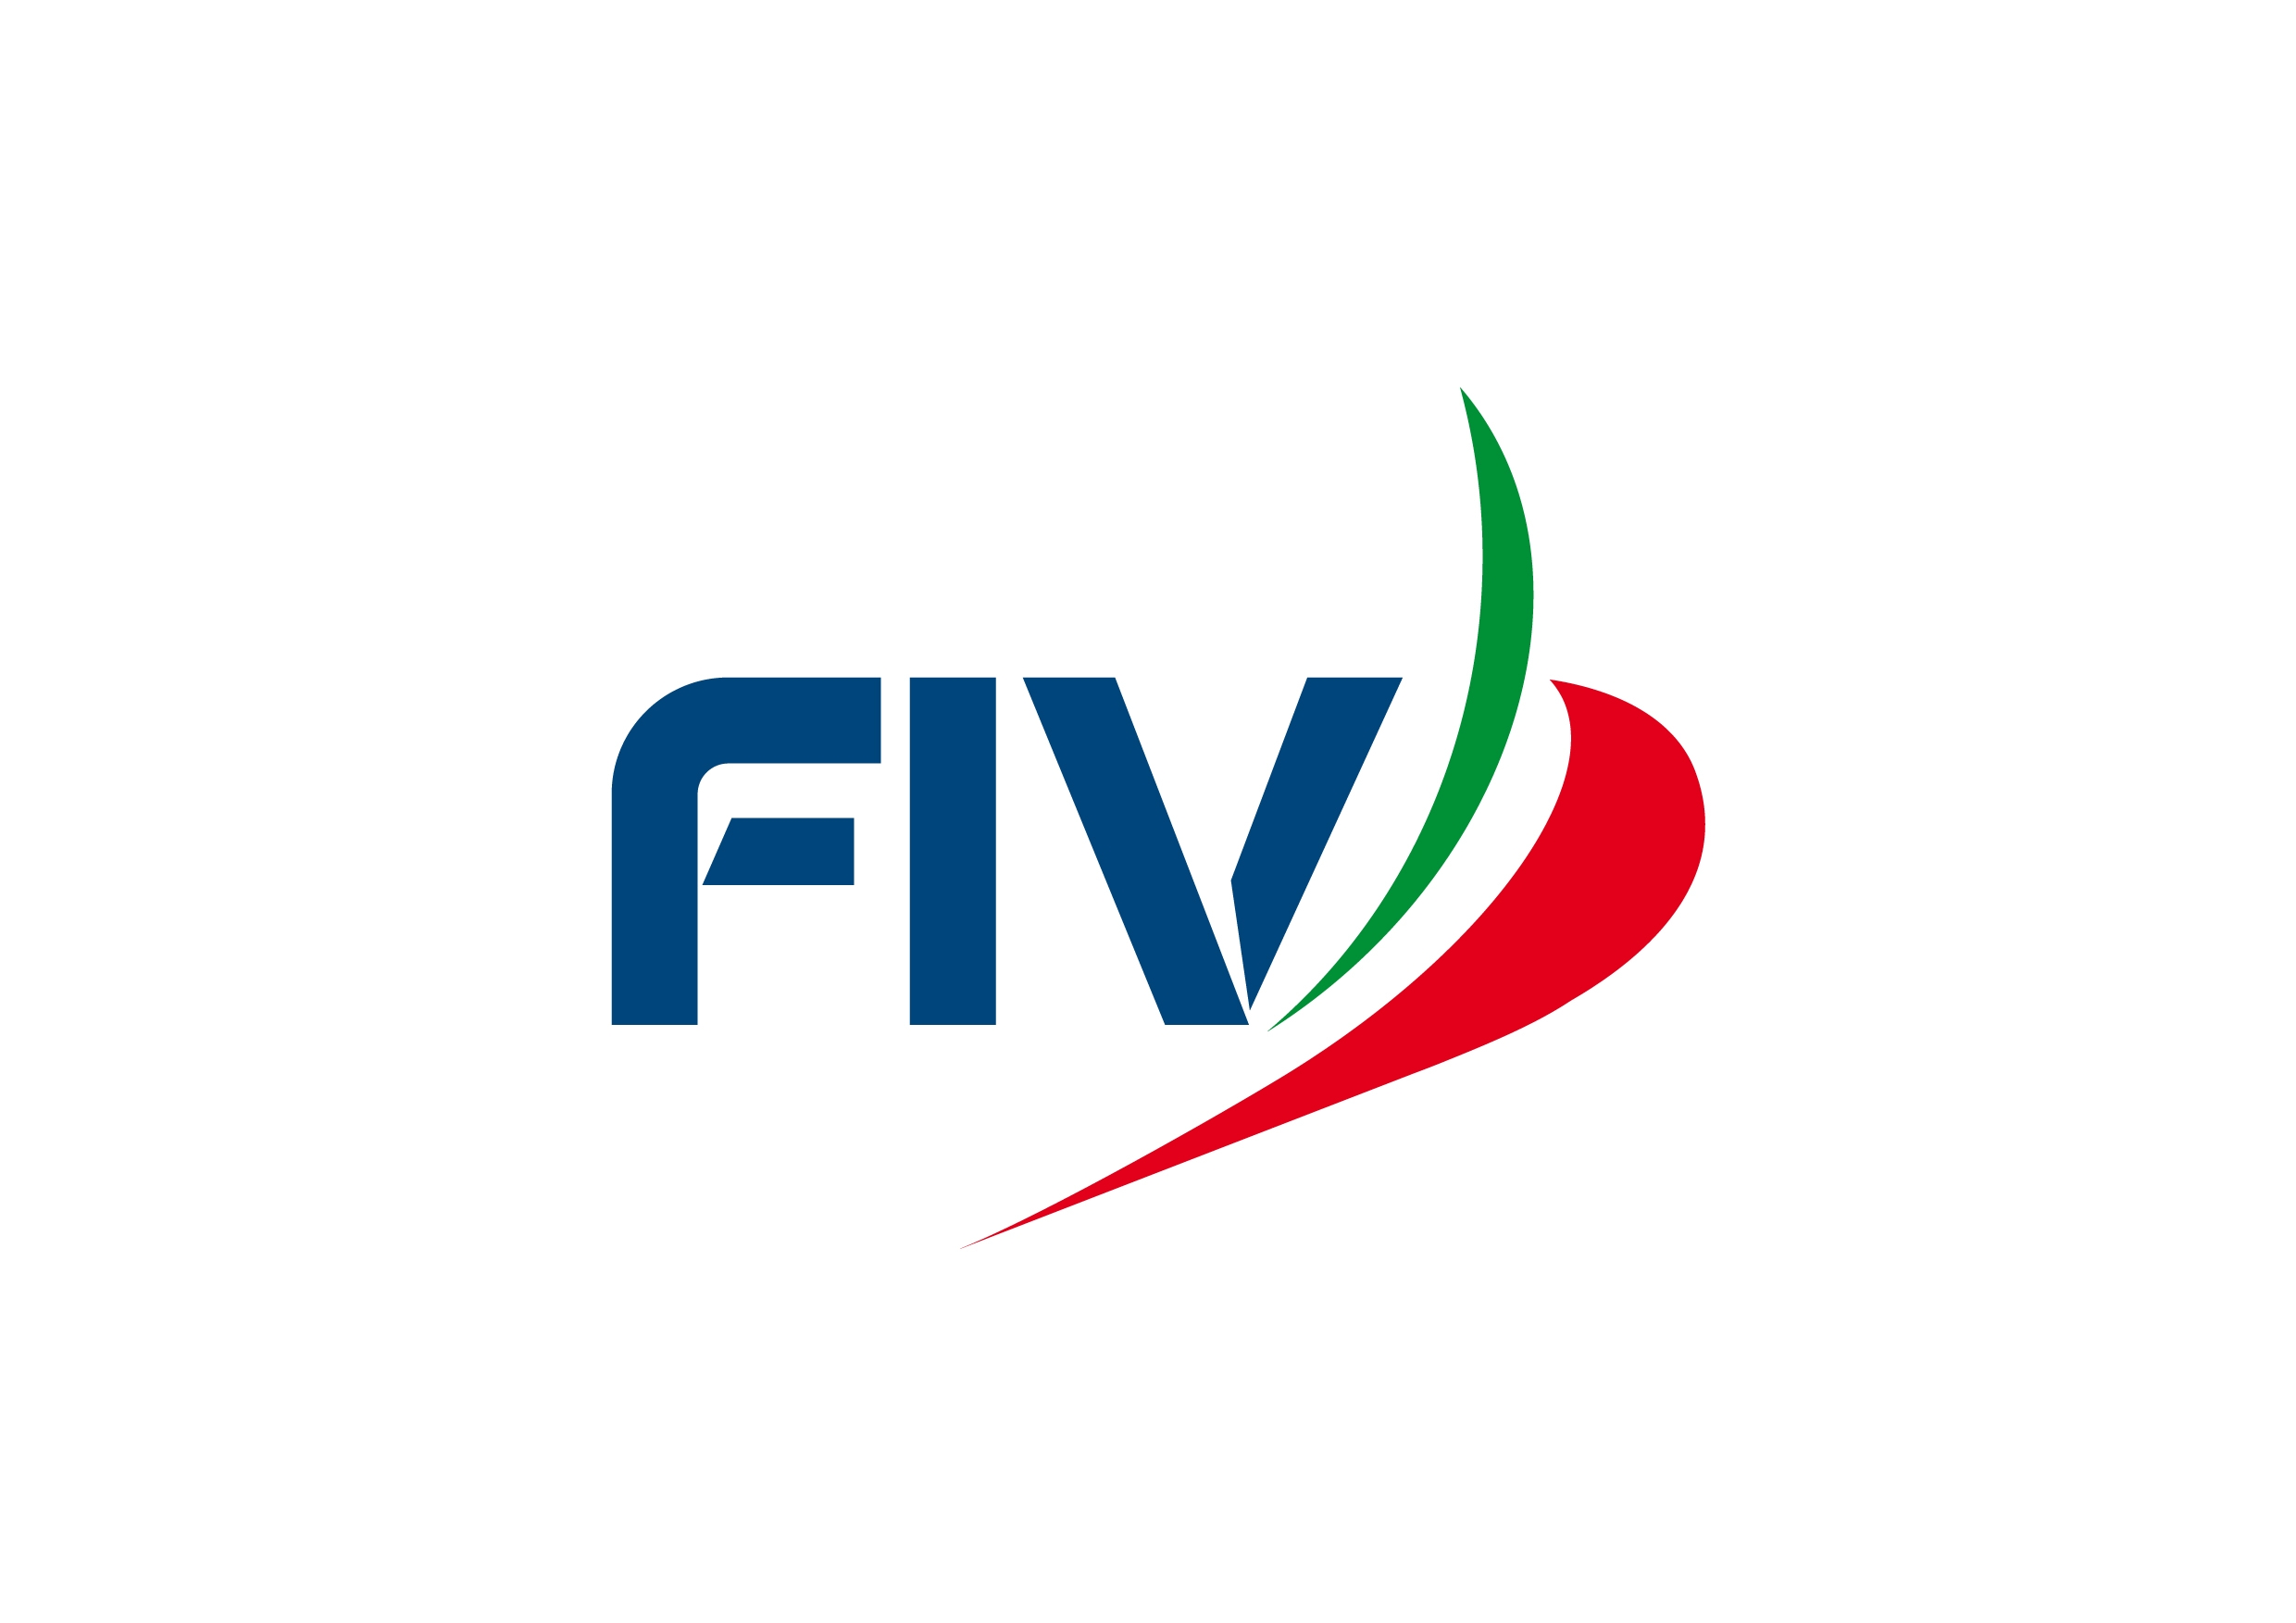 images/fiv/fiv_logo_17.jpg